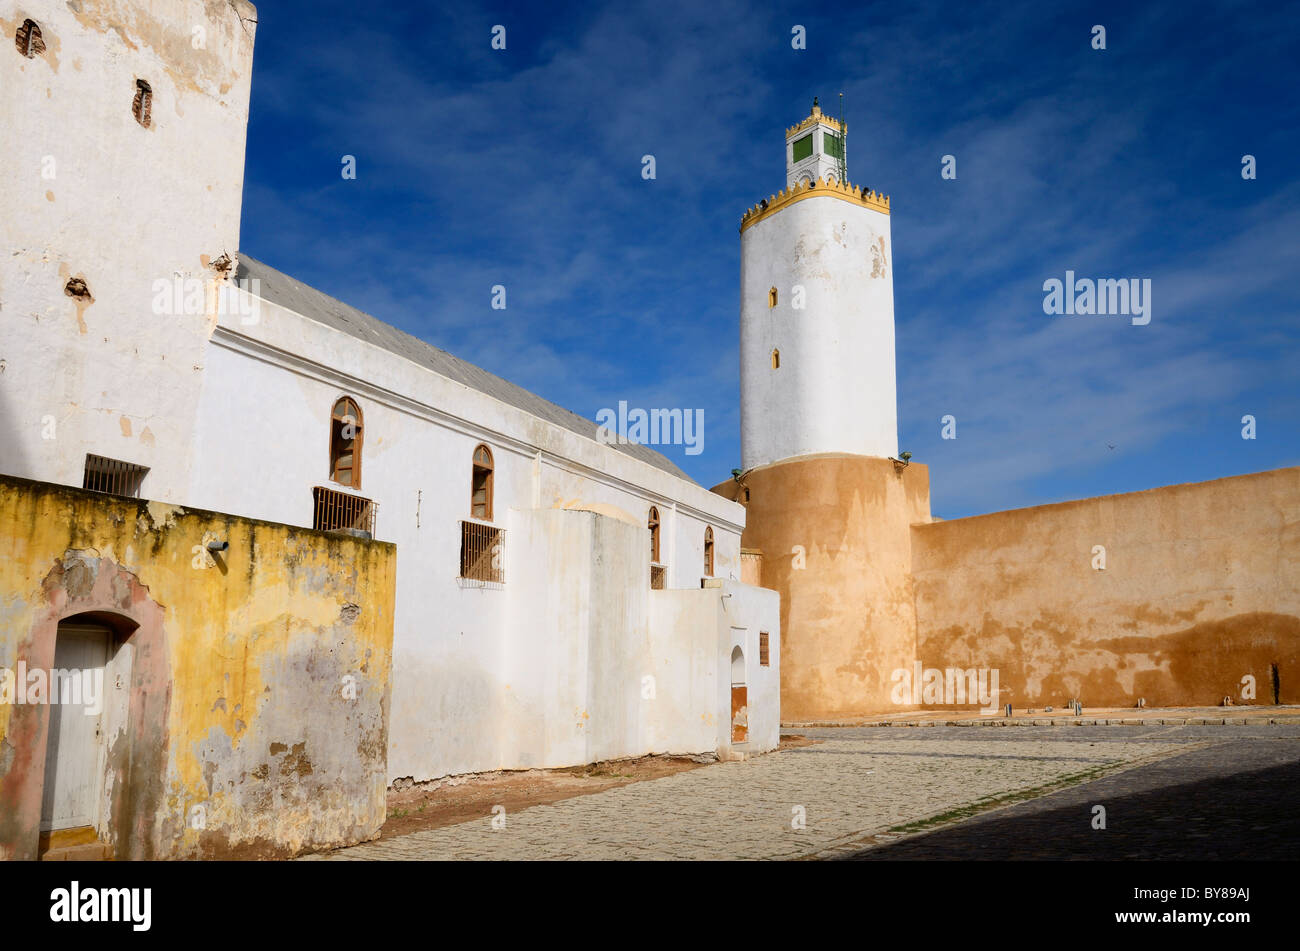 Cortile in ciottoli della grande moschea vecchia città portoghese di El Jadida marocco Foto Stock